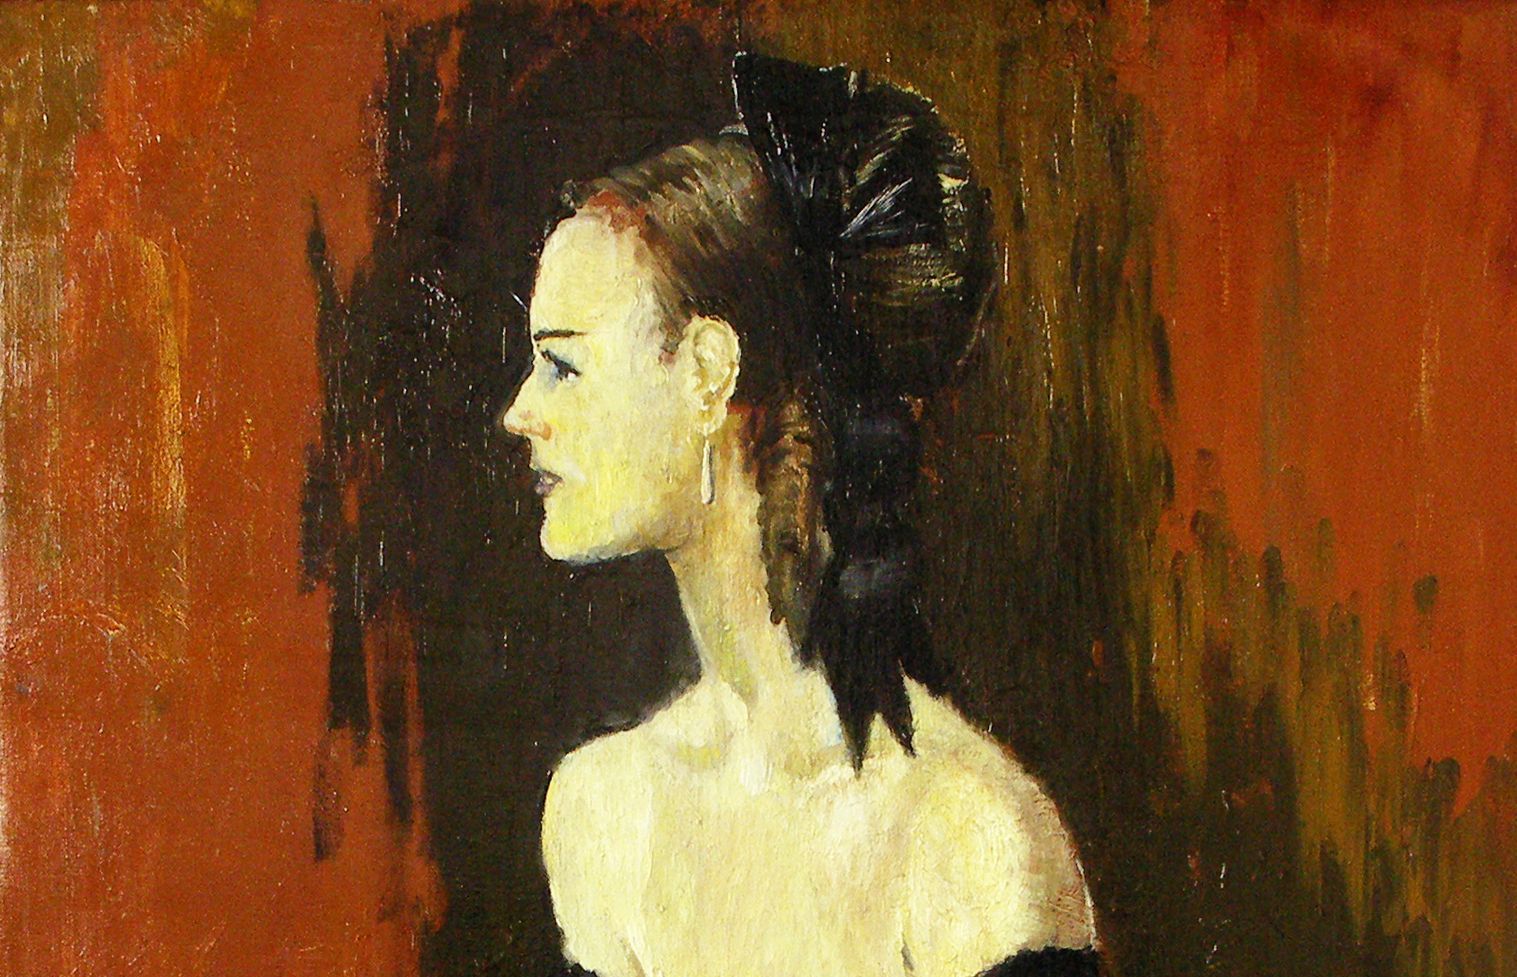 Ю. Пименов. Портрет Юлии Борисовой. 1968 год